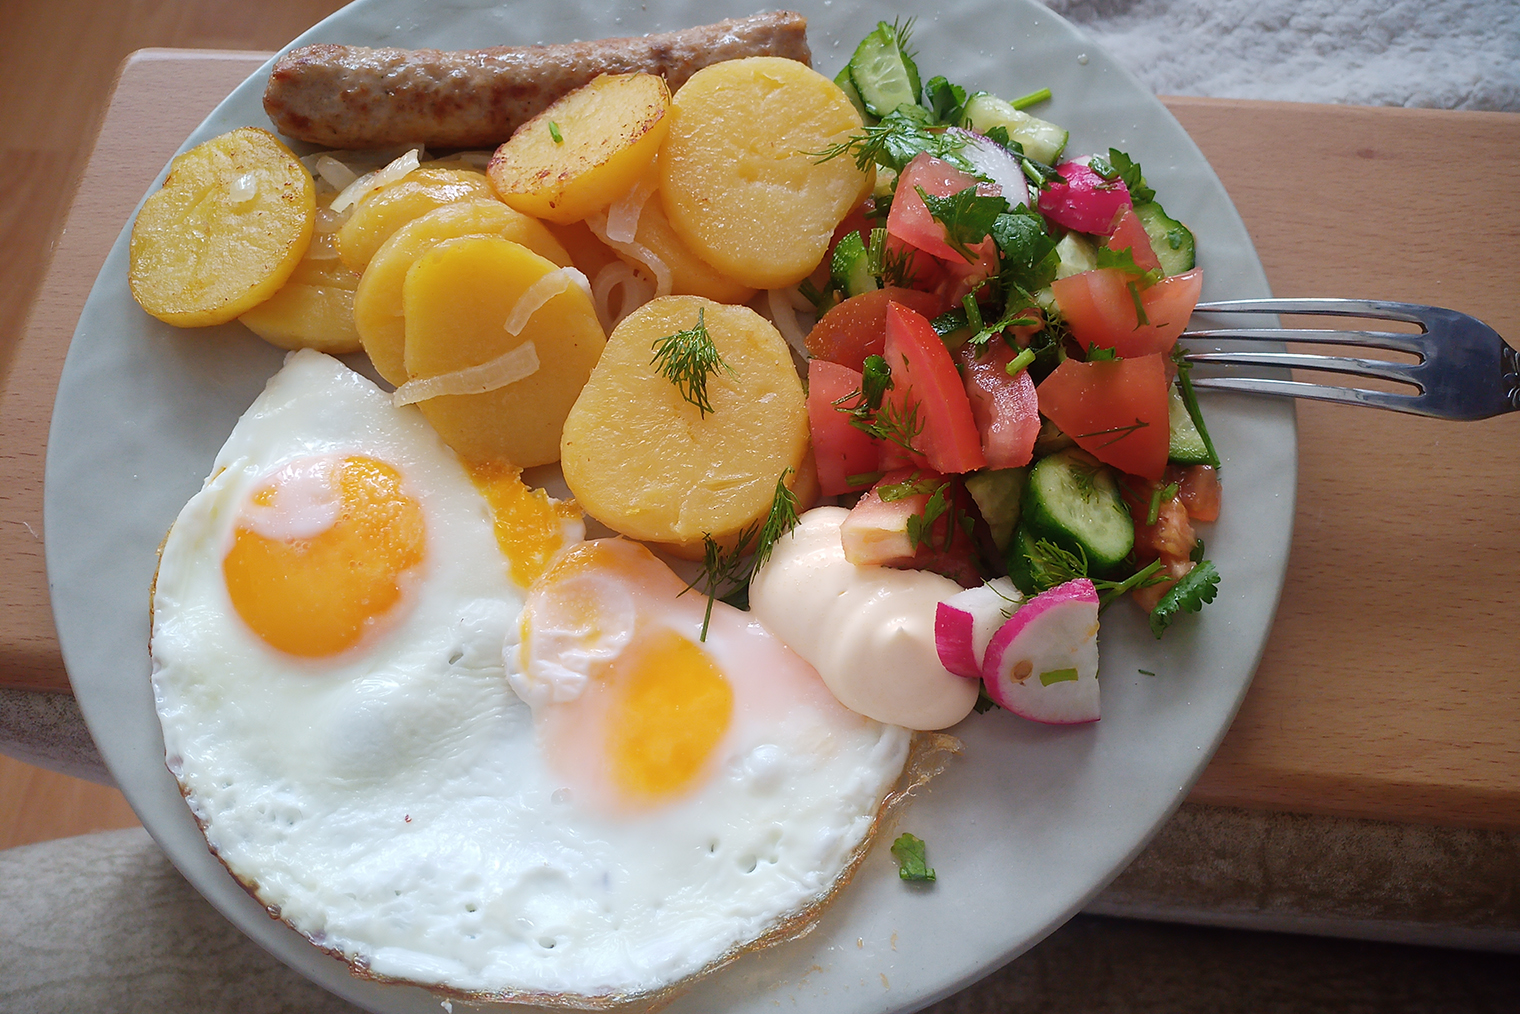 Стандартный завтрак в выходной — яичница с жареной картошкой, сосиской и овощным салатом